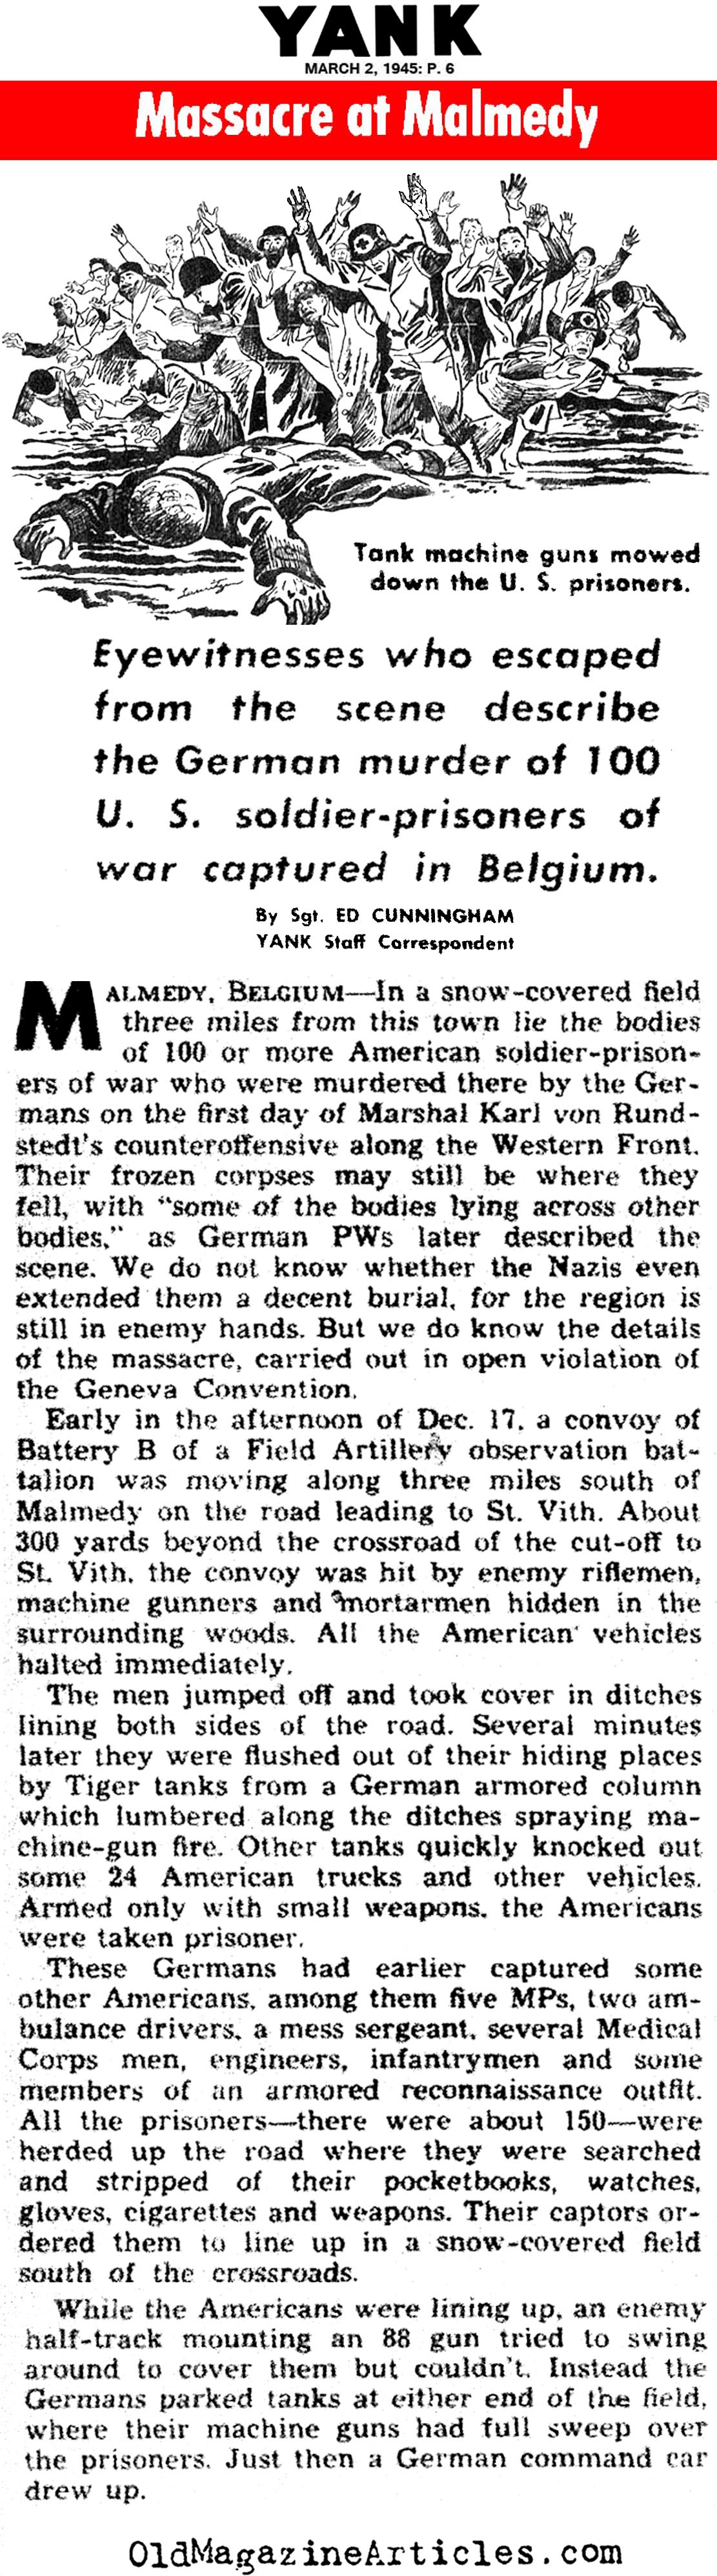 The Malmedy Massacre (Yank Magazine, 1945)